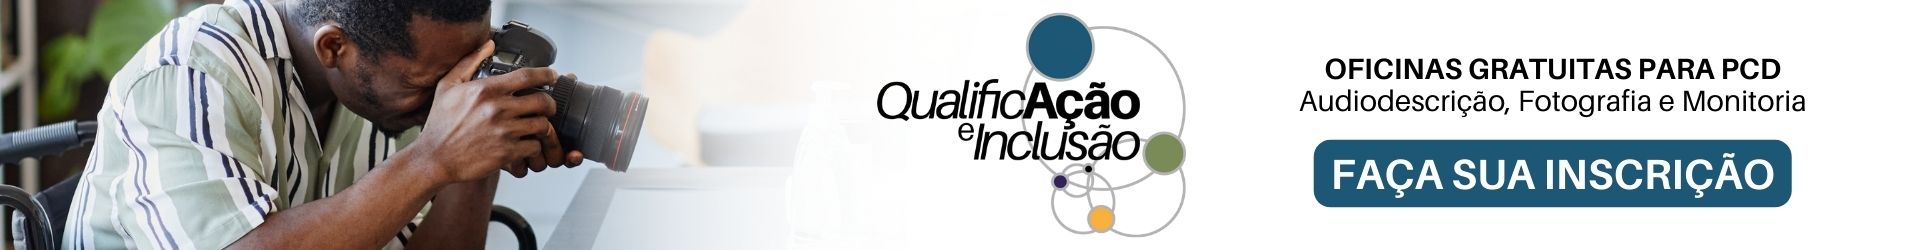 Banner de divulgação das Oficinas técnicas de qualificação profissional para pessoas com deficiência. Clique na imagem para fazer sua inscrição e saber mais informações.